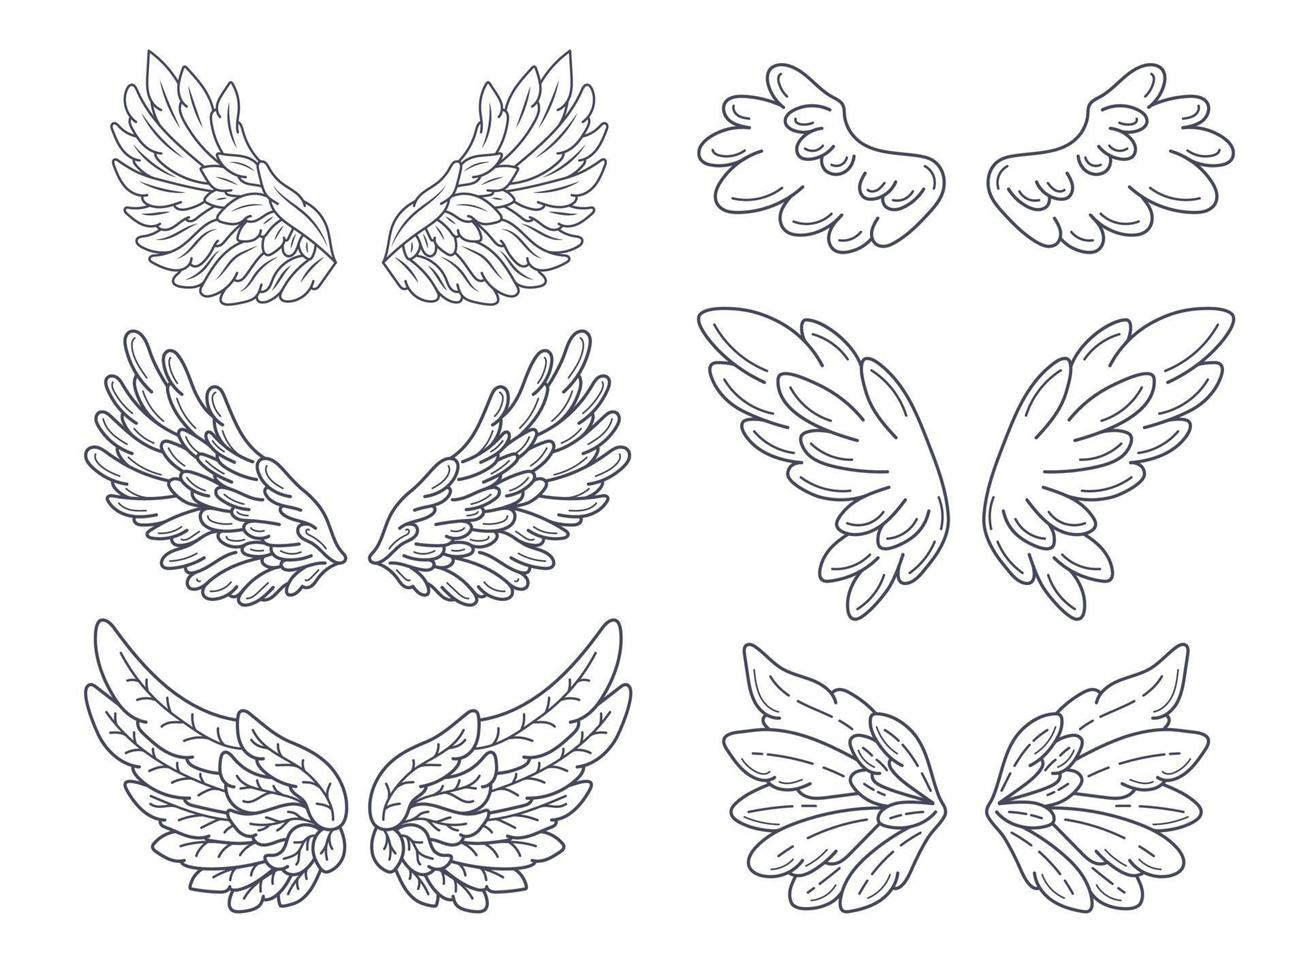 Sammlung von Engelsflügeln, weit verbreitet. Konturzeichnung im modernen Linienstil. vektorillustration lokalisiert auf weiß. vektor